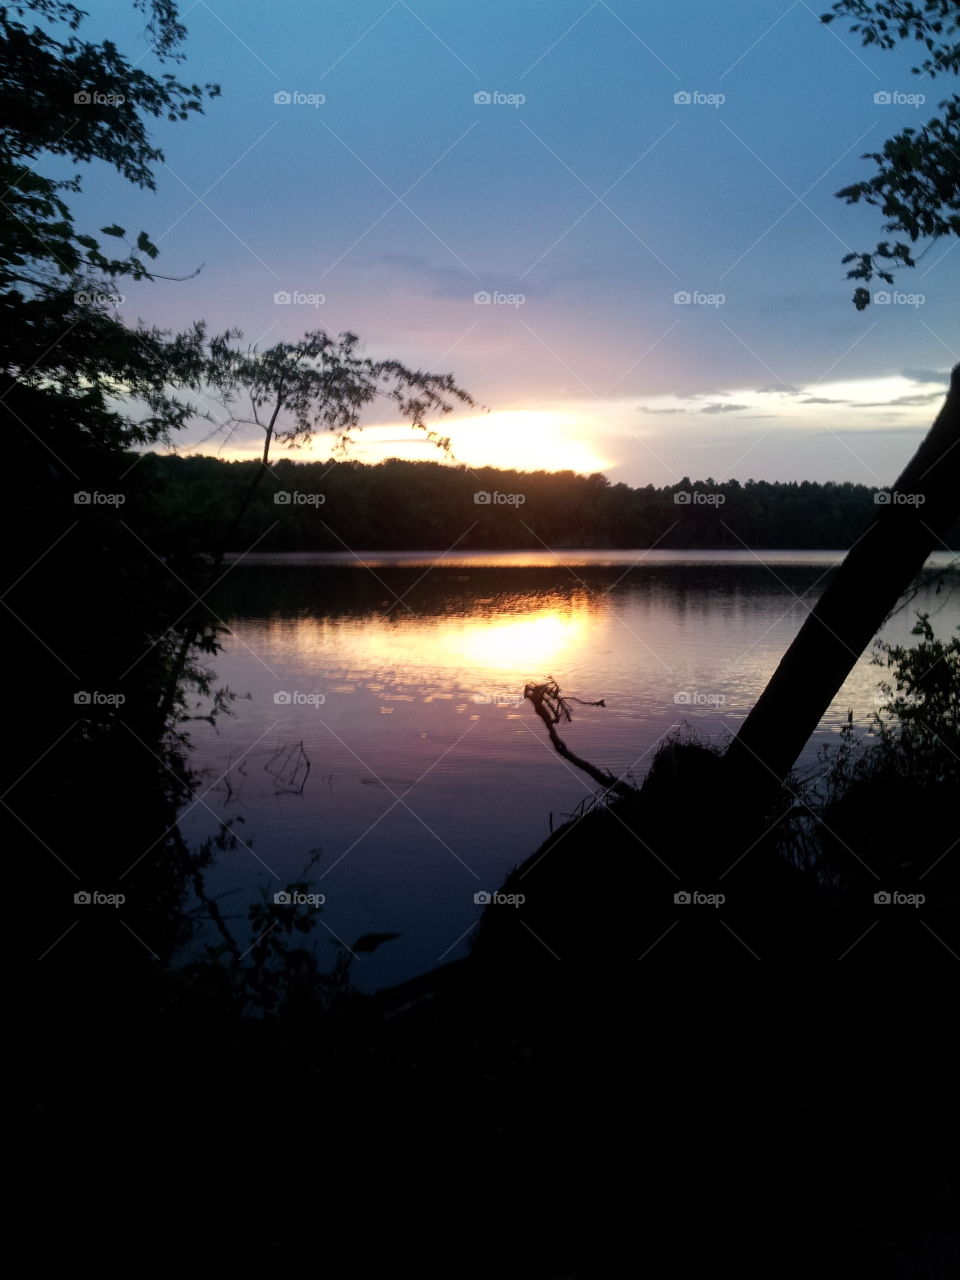 sunset lake